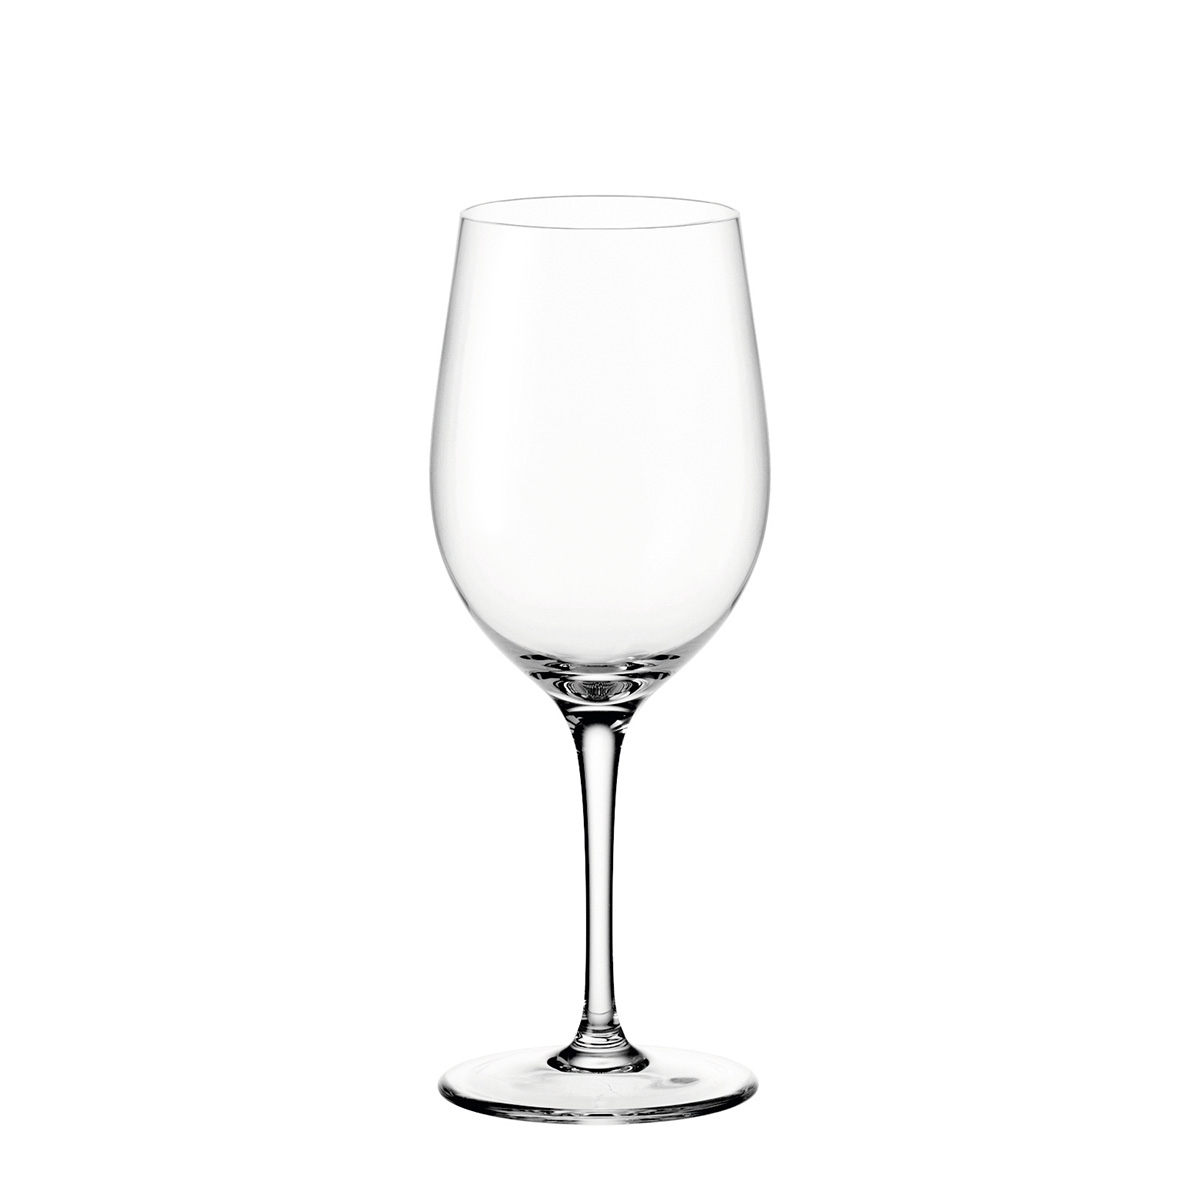 Čaša za belo vino Ciao 61446 